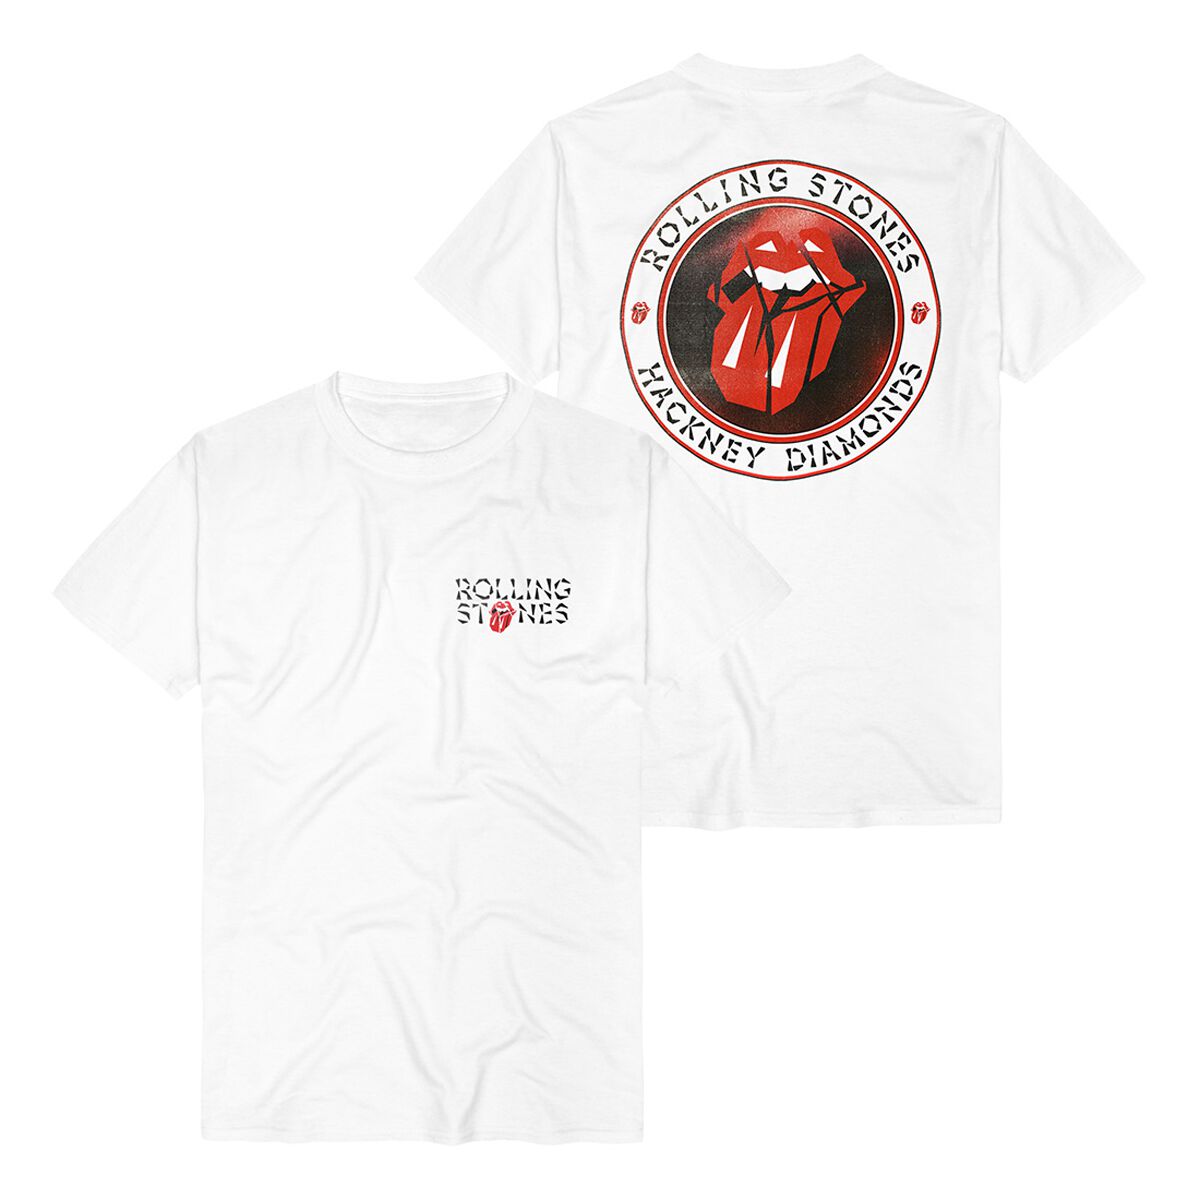 The Rolling Stones T-Shirt - Hackney Diamonds Circle Label - S bis 3XL - für Männer - Größe XL - weiß  - Lizenziertes Merchandise!